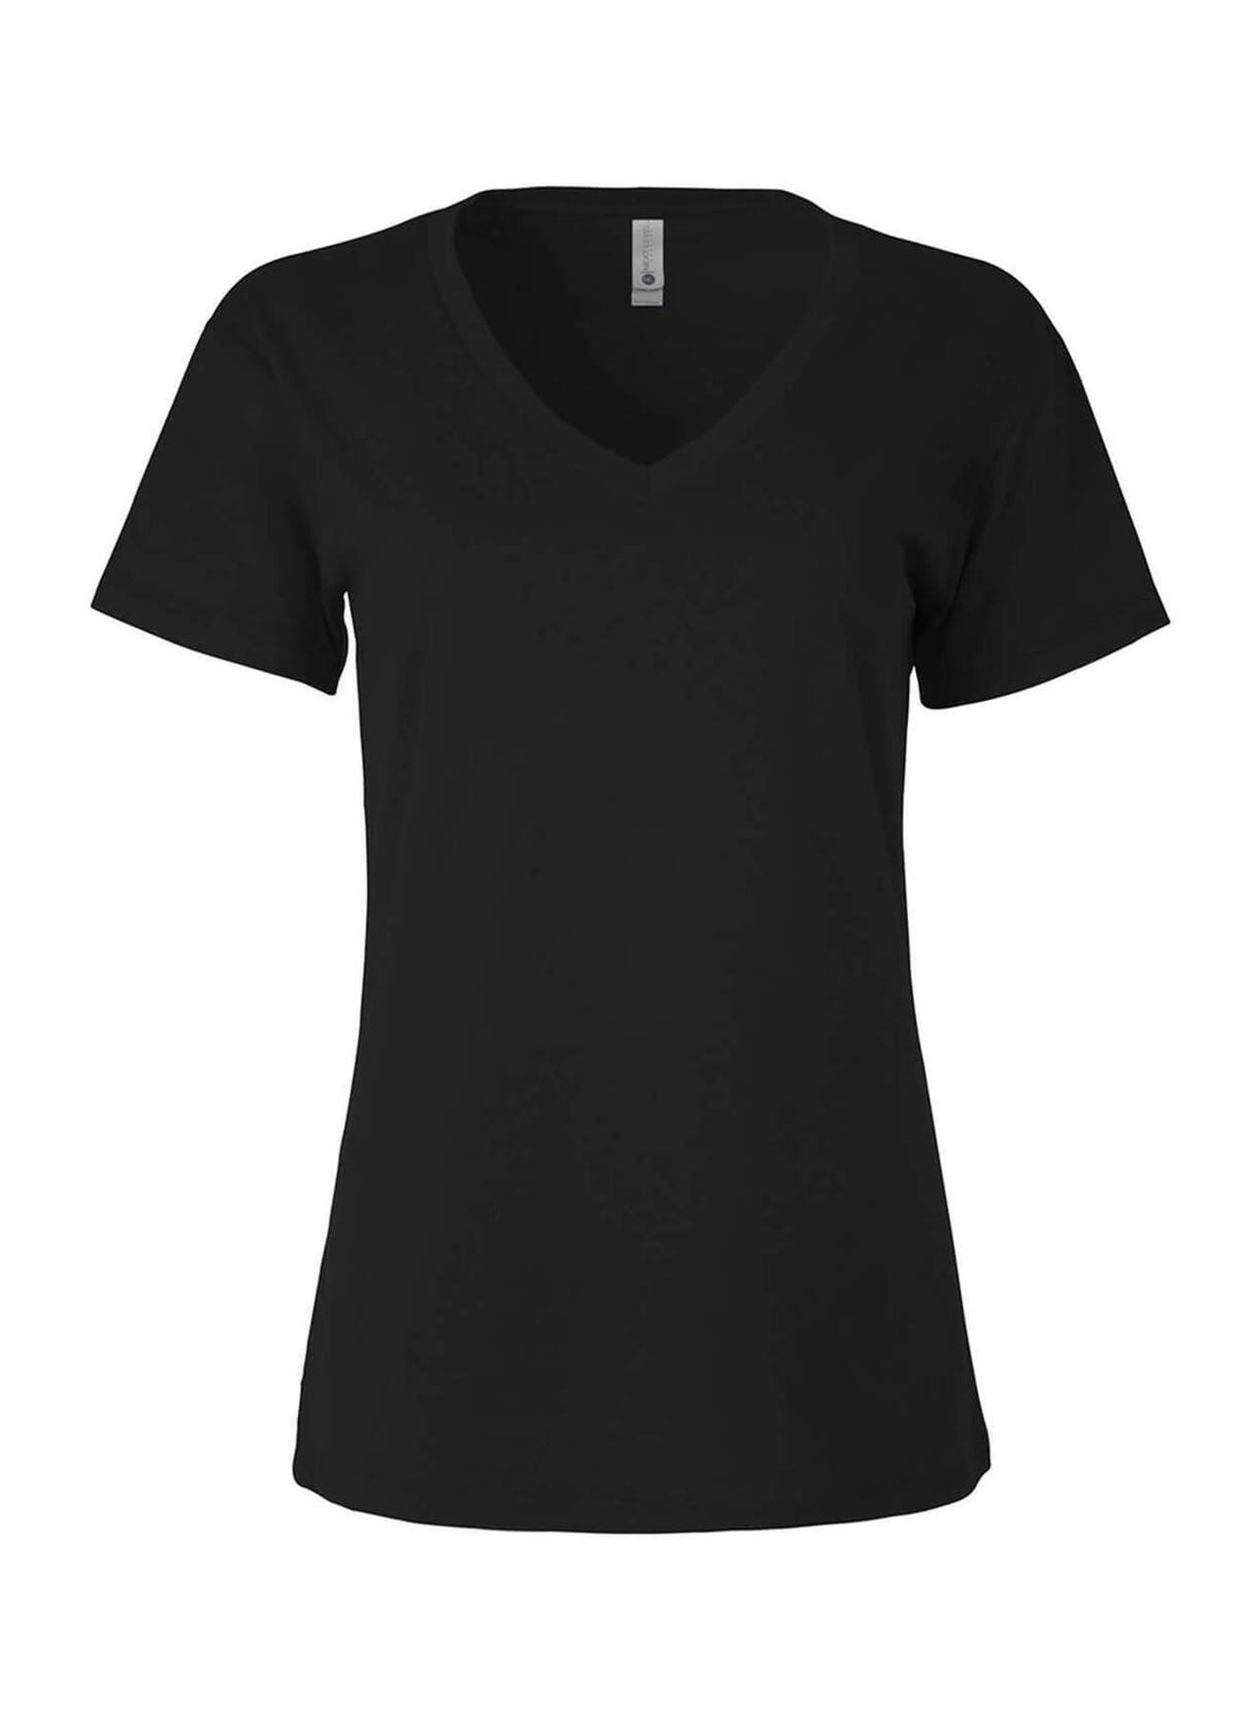 Next Level Women's Black Relaxed V-Neck T-Shirt